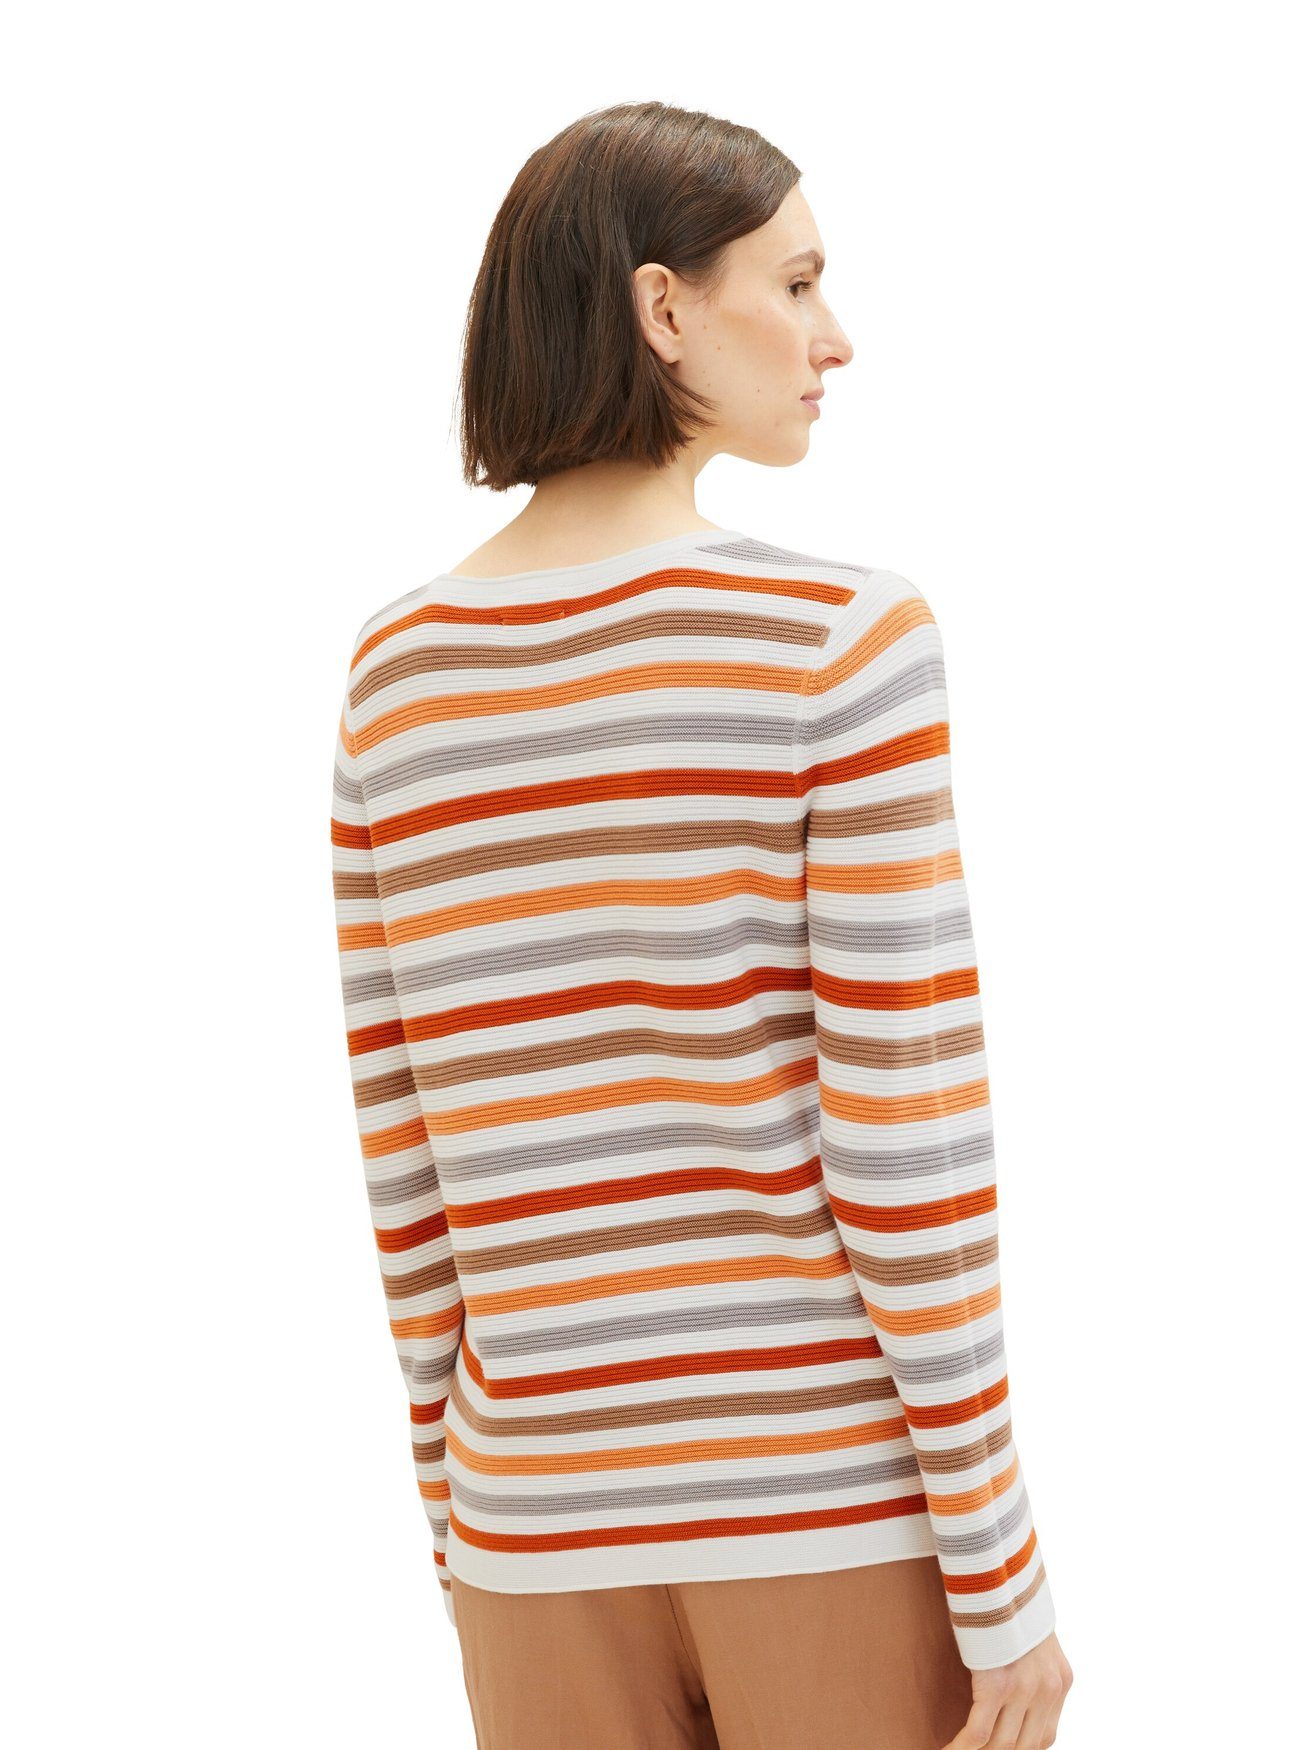 TAILOR 4656 Baumwolle Strickpullover Rundhals OTTOMAN Sweater Orange aus in Strickpullover Langarm TOM